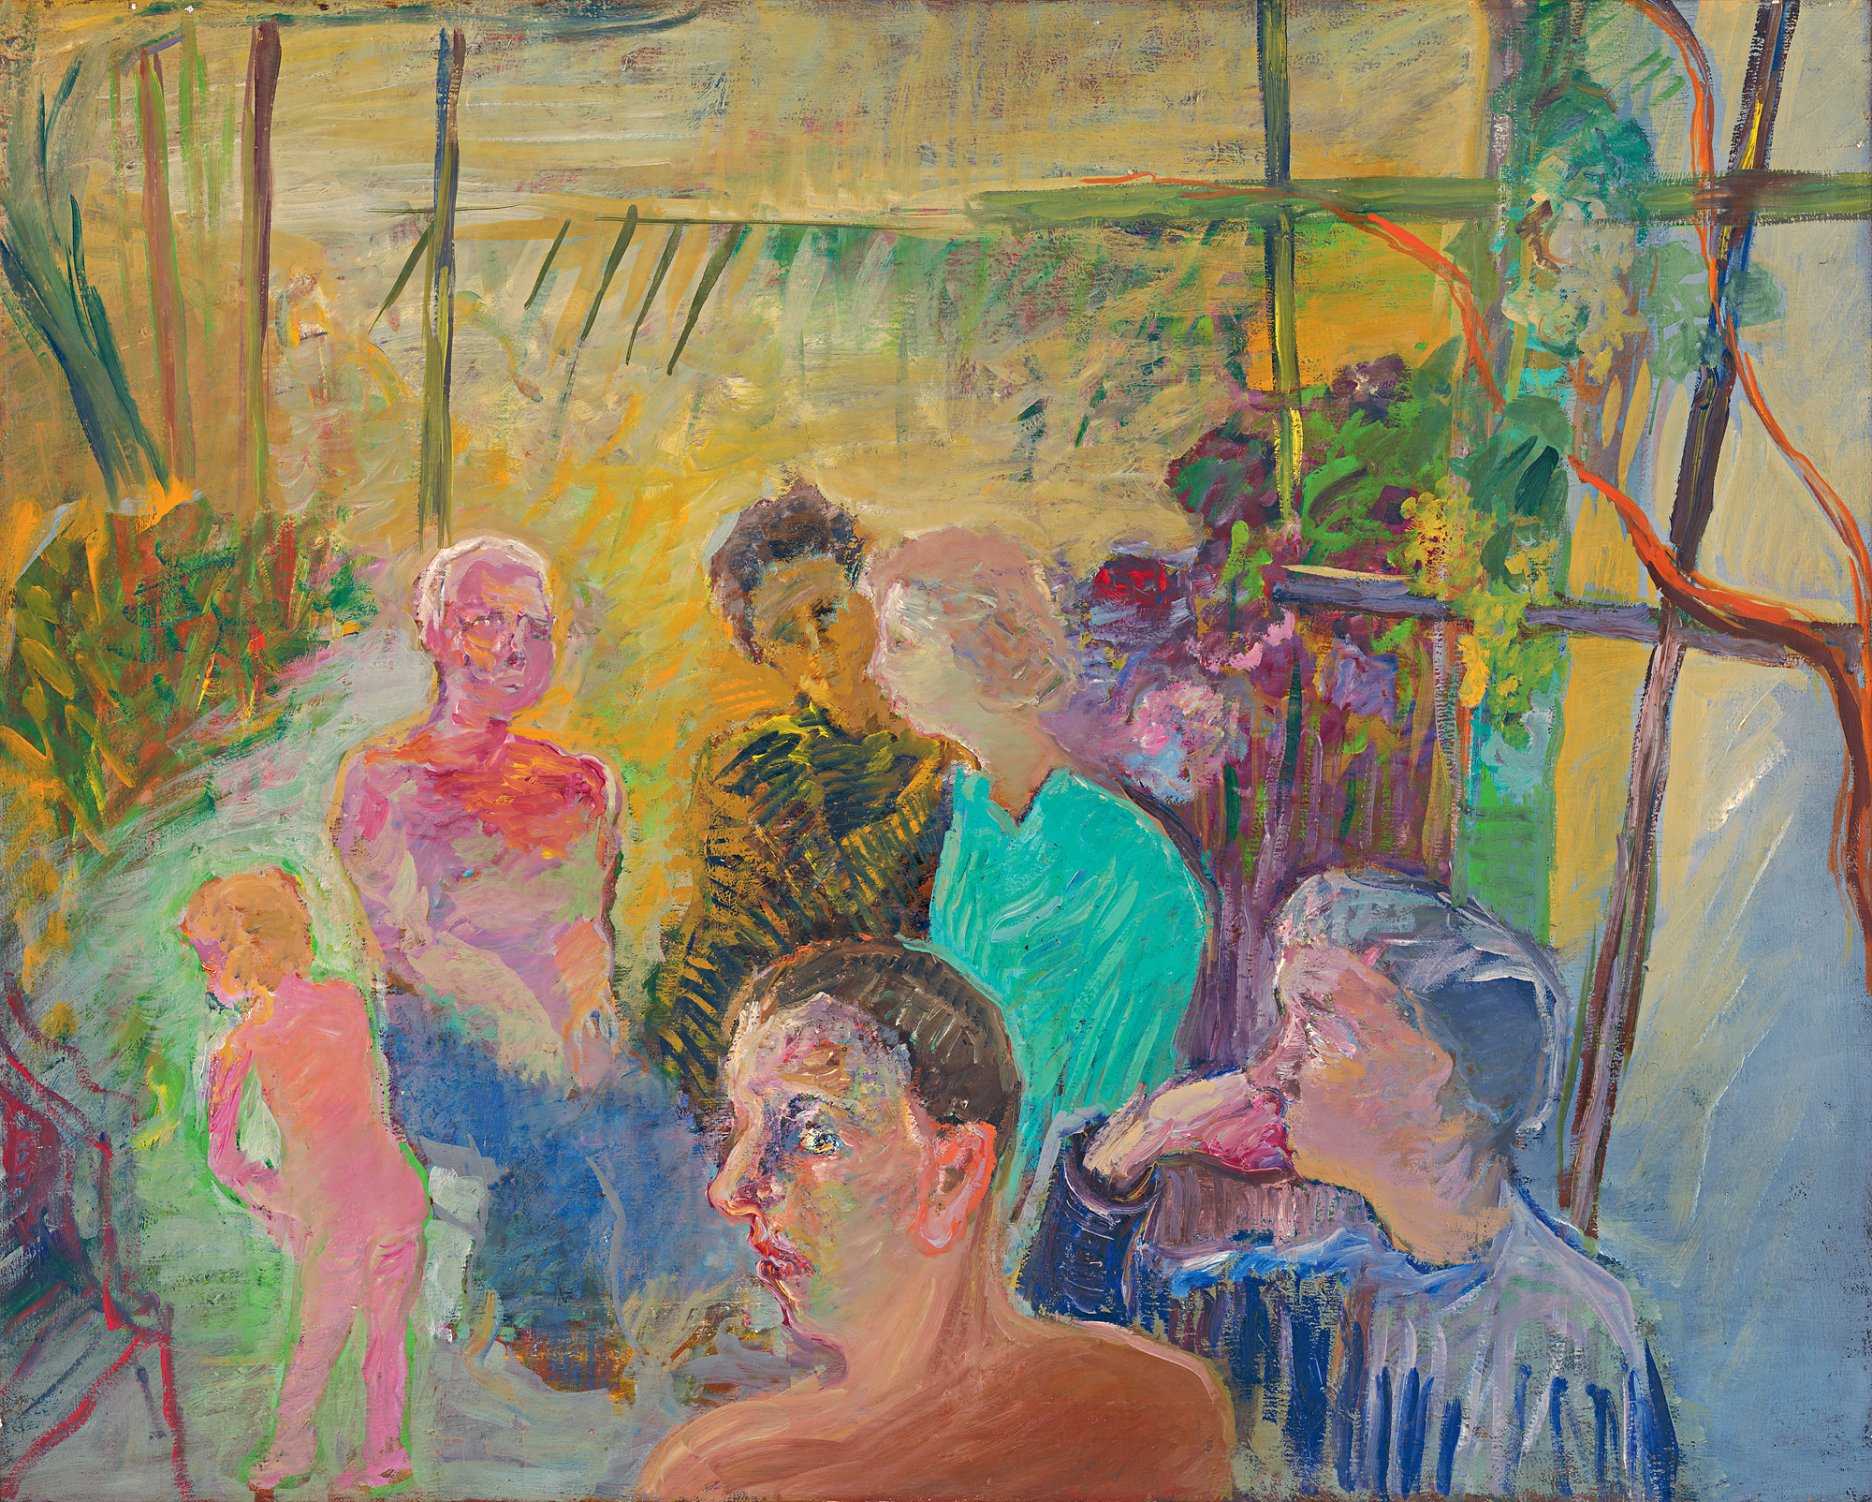 Ján Berger: Rodinný portrét / Family Portrait. 1971 – 1985. Olej na plátne / oil on canvas, 80 × 100 cm. Slovenská národná galéria, Bratislava